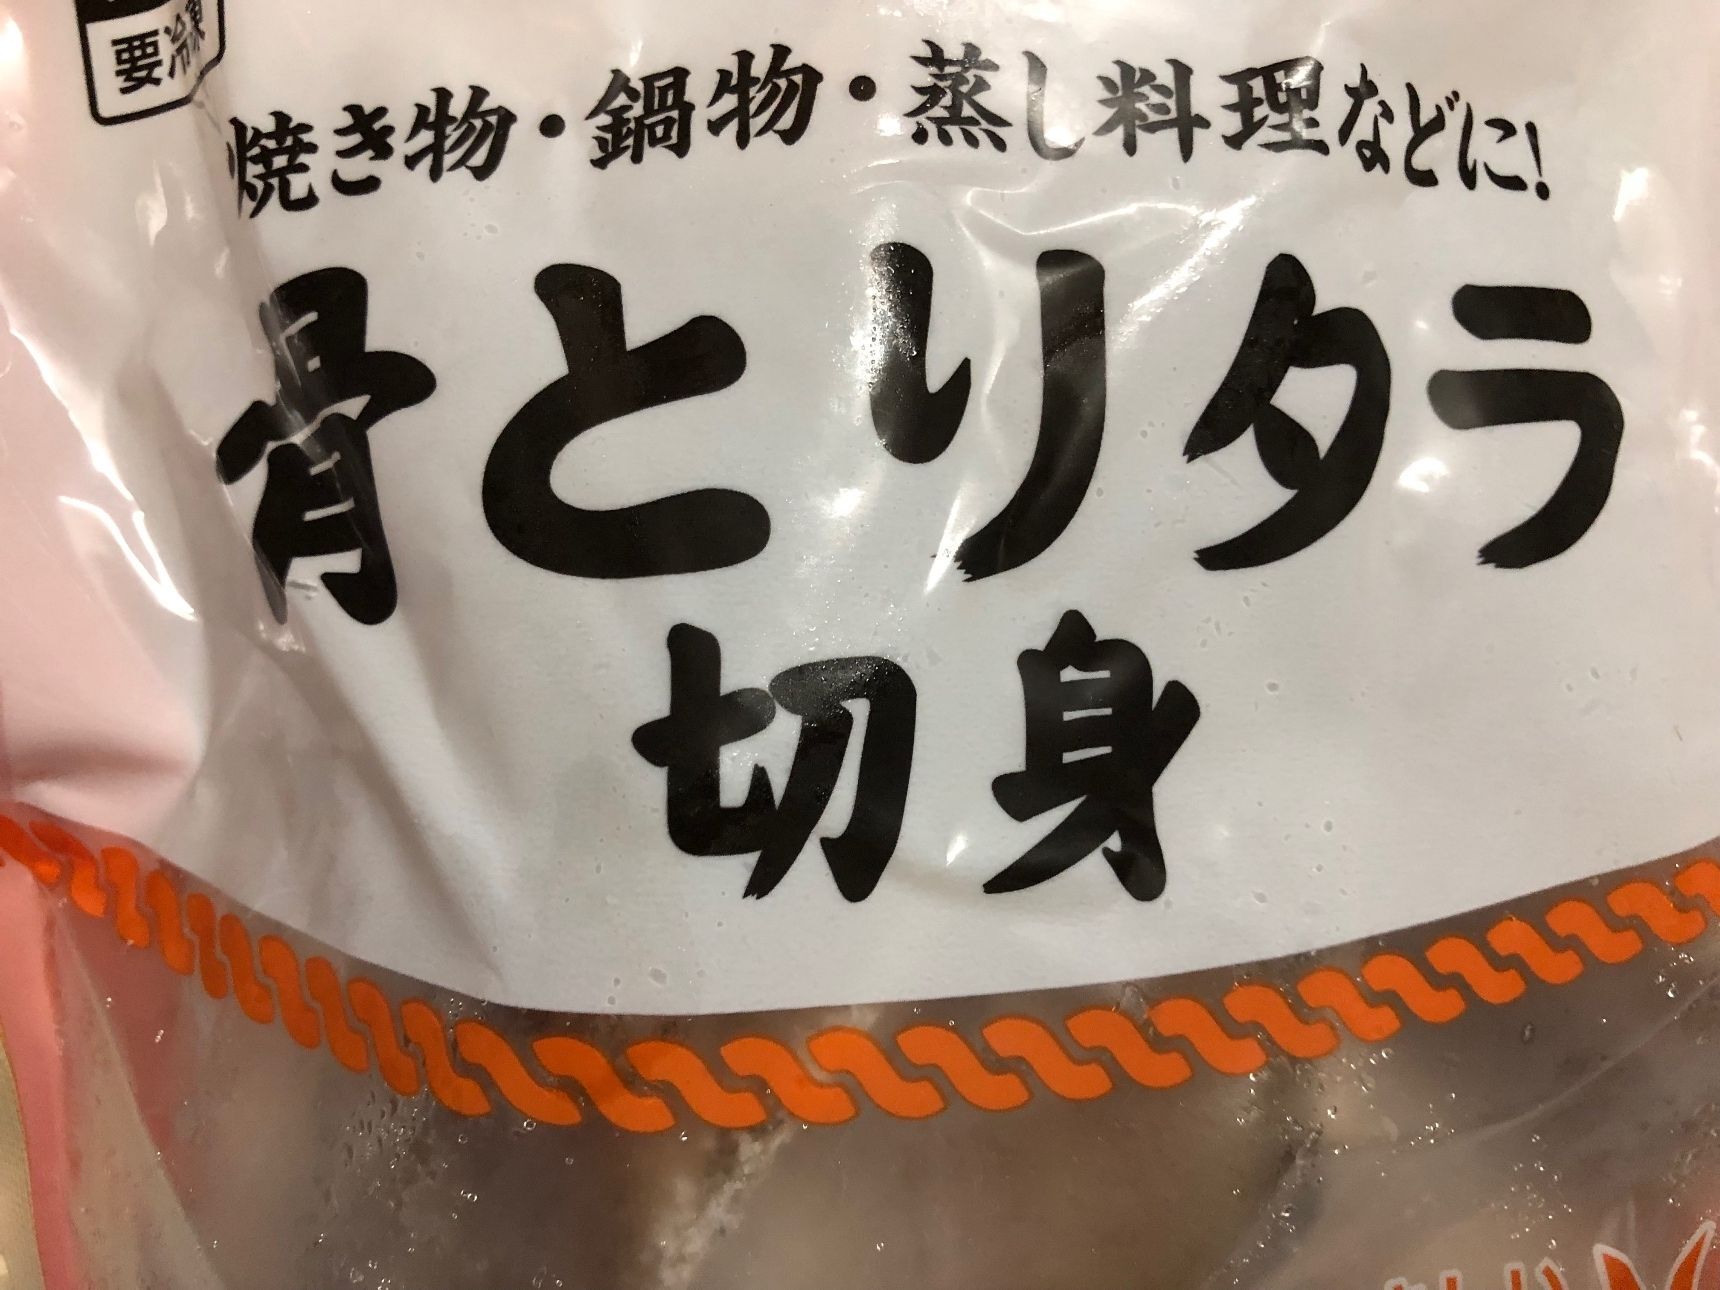 鱈は骨なしの冷凍の物を使います